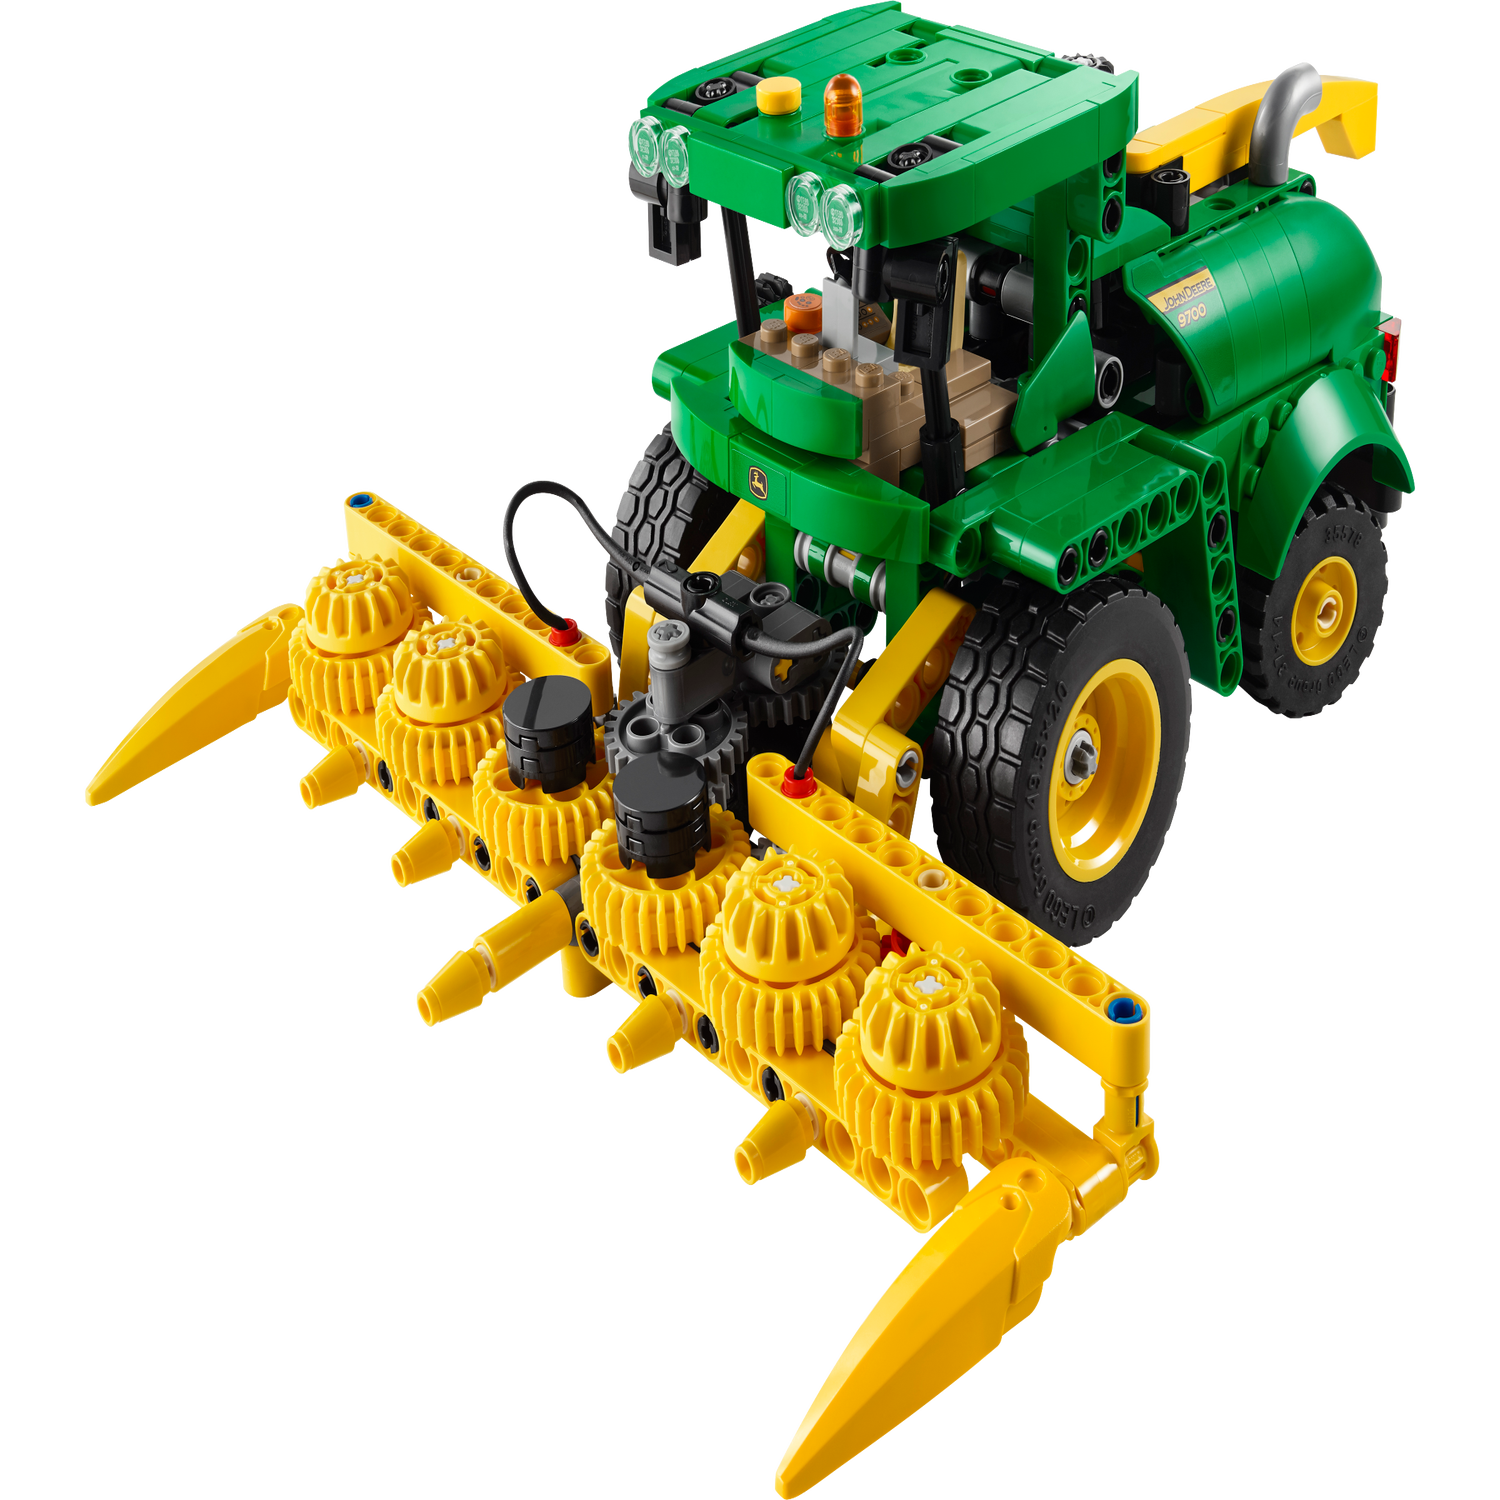 John Deere 9700 Forage Harvester - Videos - LEGO.com for kids